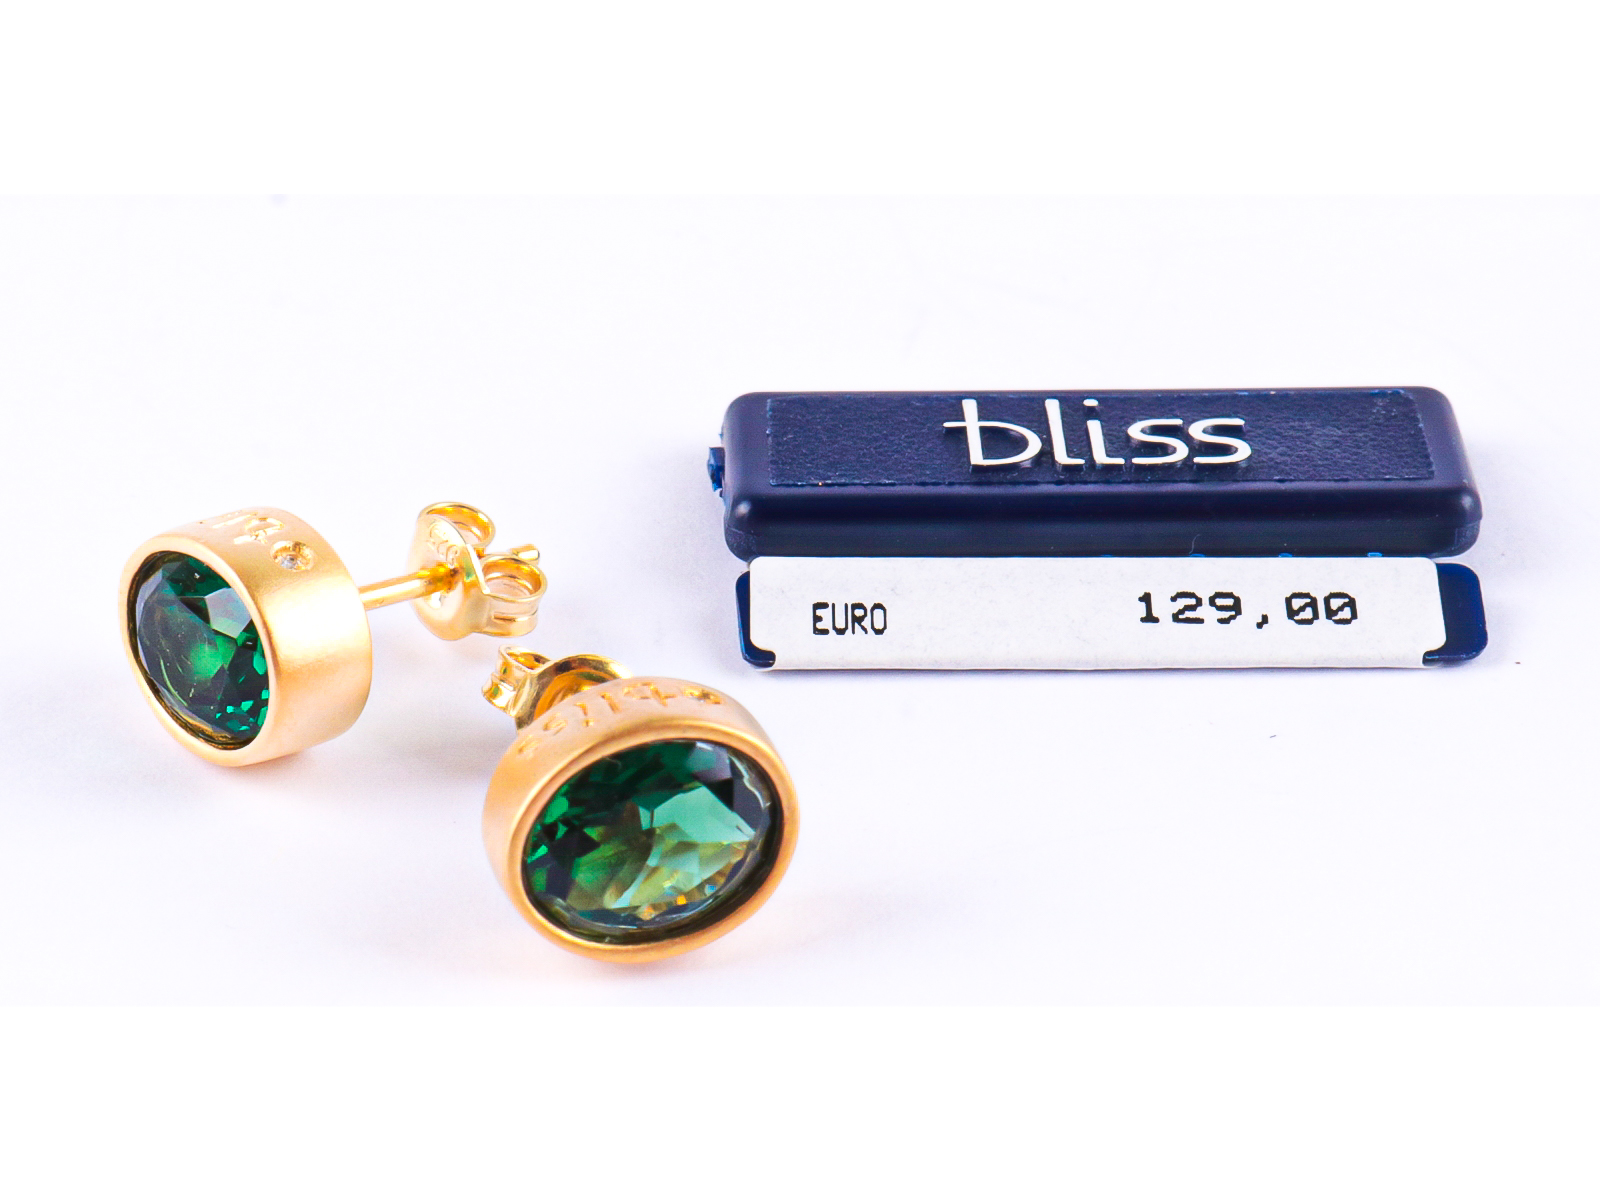 Bliss zilveren oorbellen goudkleurig of goudverguld met groene steen en kleine diamantjes